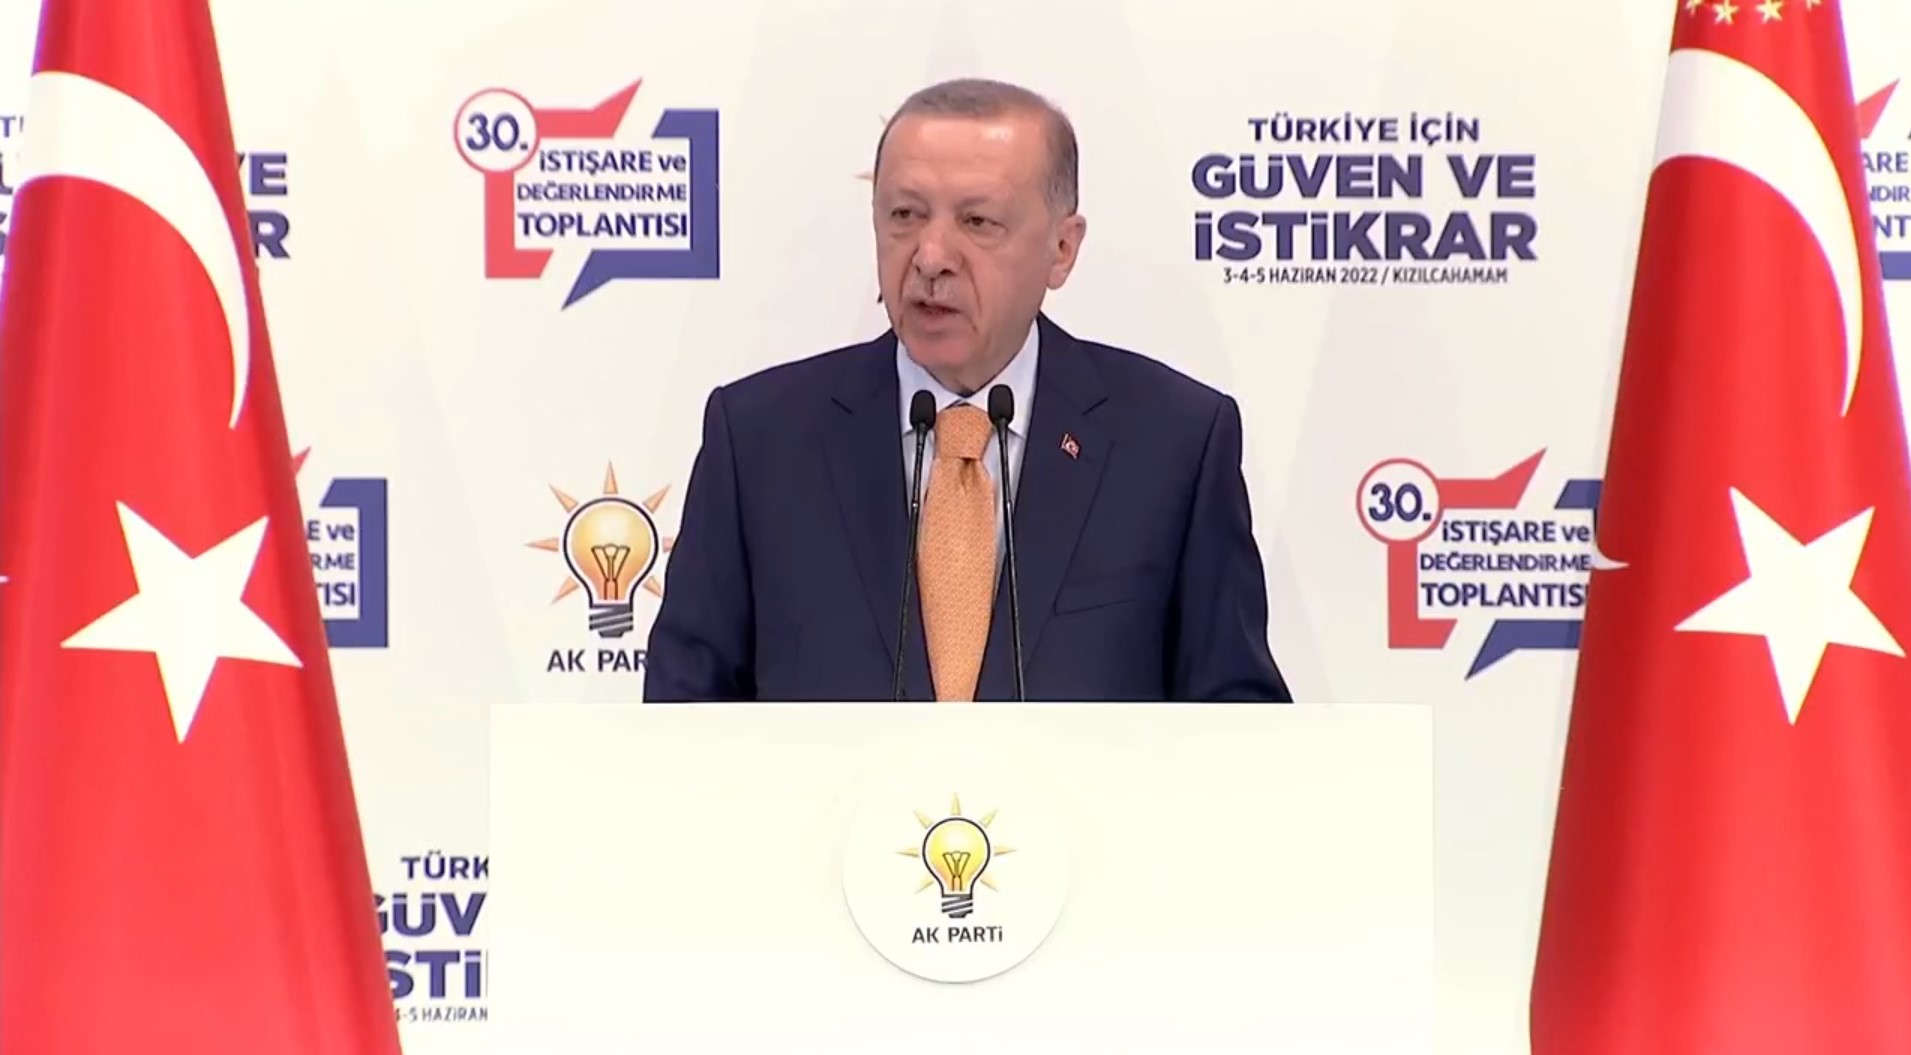 Cumhurbaşkanı Erdoğan, AK Parti'nin Kızılcahamam kampında konuştu! Seçim tarihi belli, sıkıyorsa aday mısın, değil misin onu açıkla